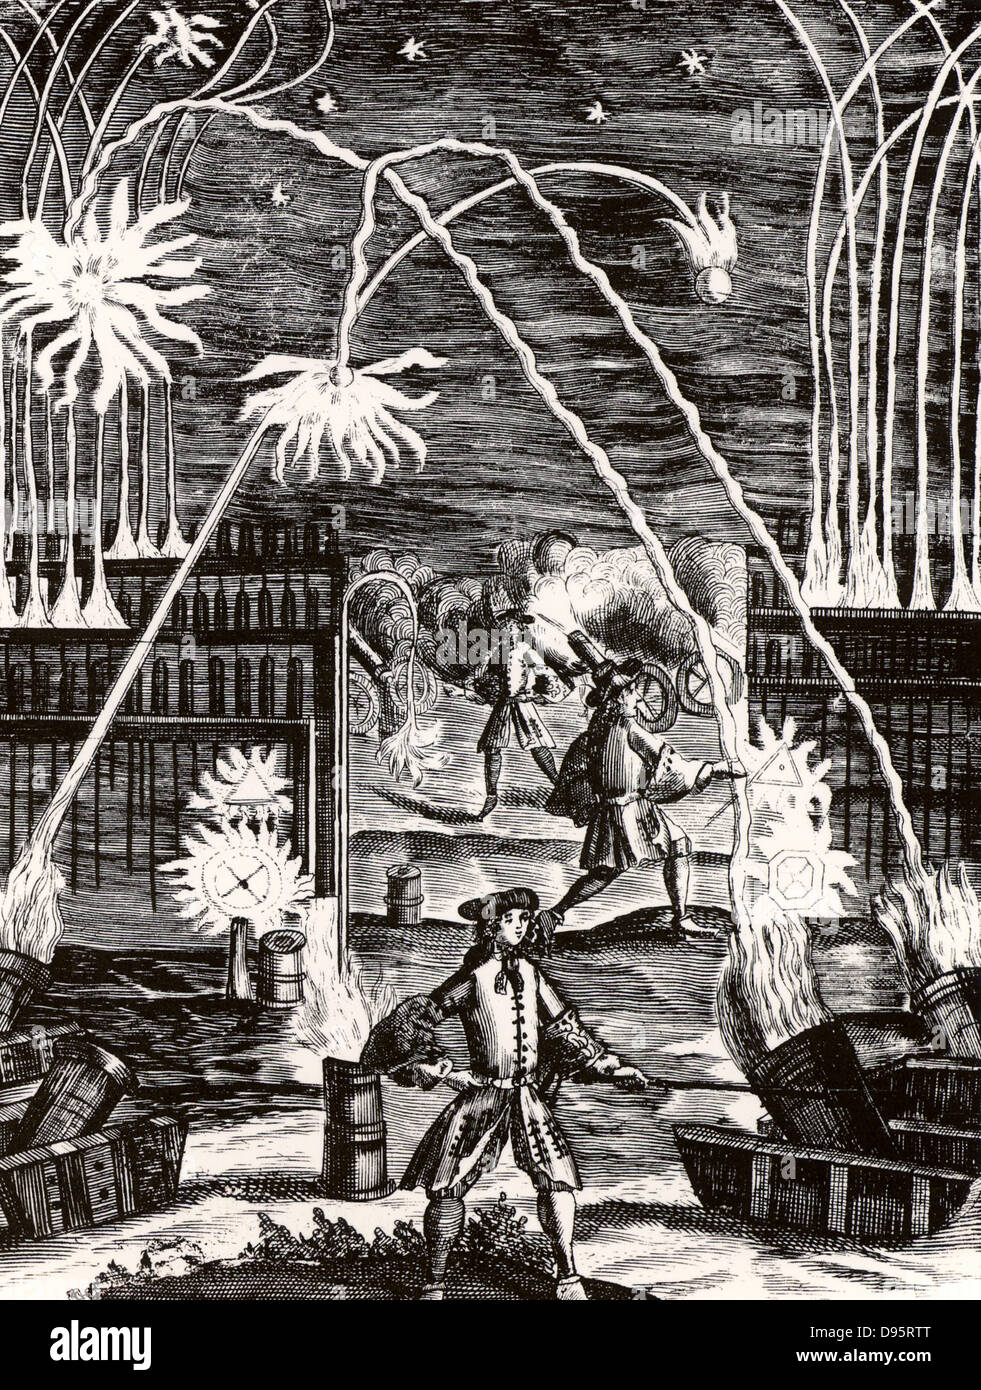 Les utilisations de la poudre y compris des mortiers, canons, roquettes et d'artifice. À partir de 'Magia naturalis' par Johannes Baptista della Porta (Nuremberg, 1715). La première édition de ce livre a paru à Naples en 1558. La gravure. Banque D'Images